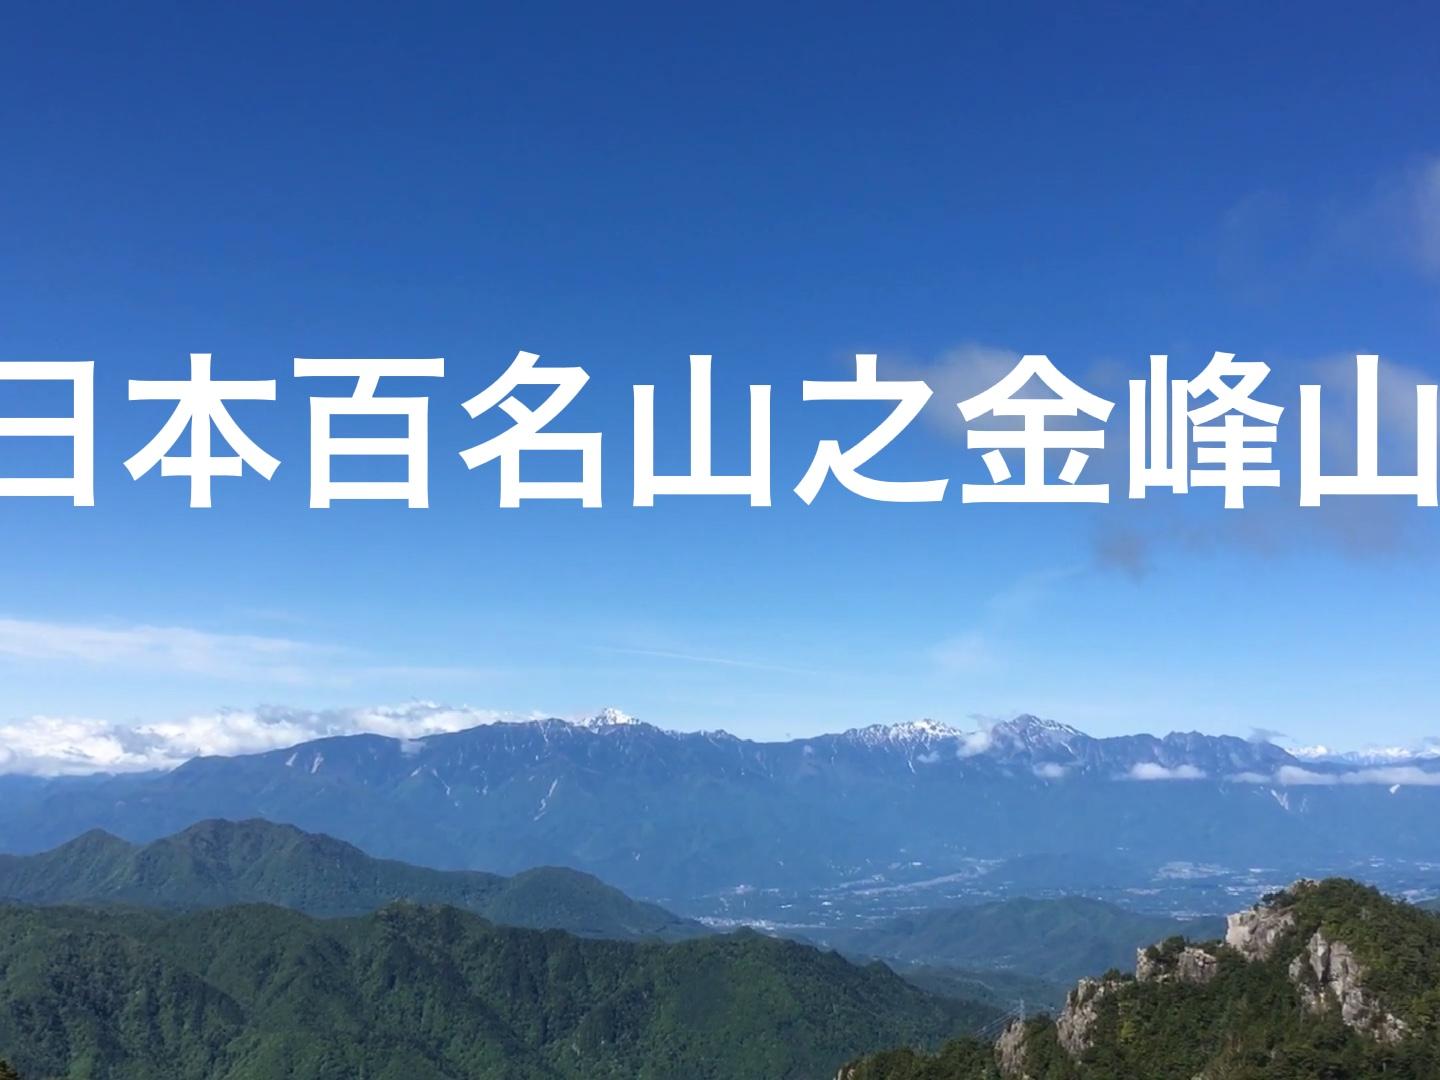 日本登山记百名山之金峰山 きんぷさん 2599米瑞墙山庄开始 西瓜视频